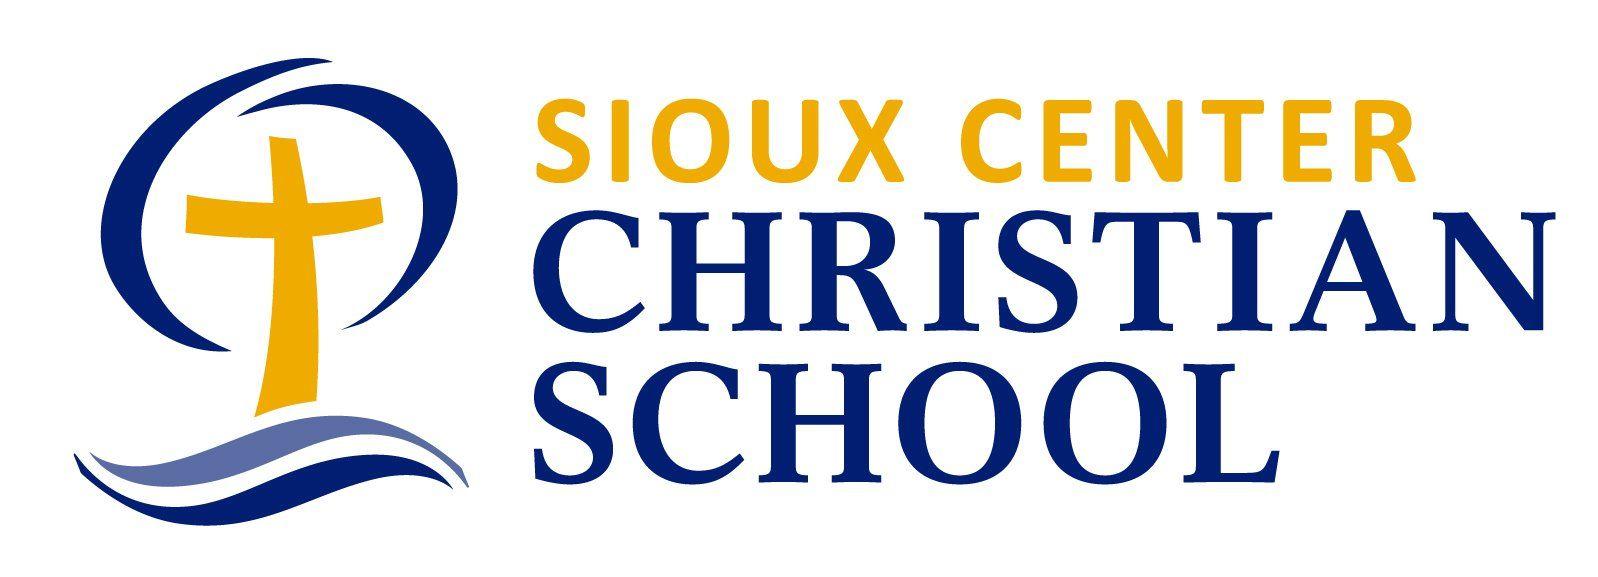 Christan Logo - Our Logos - Sioux Center Christian School